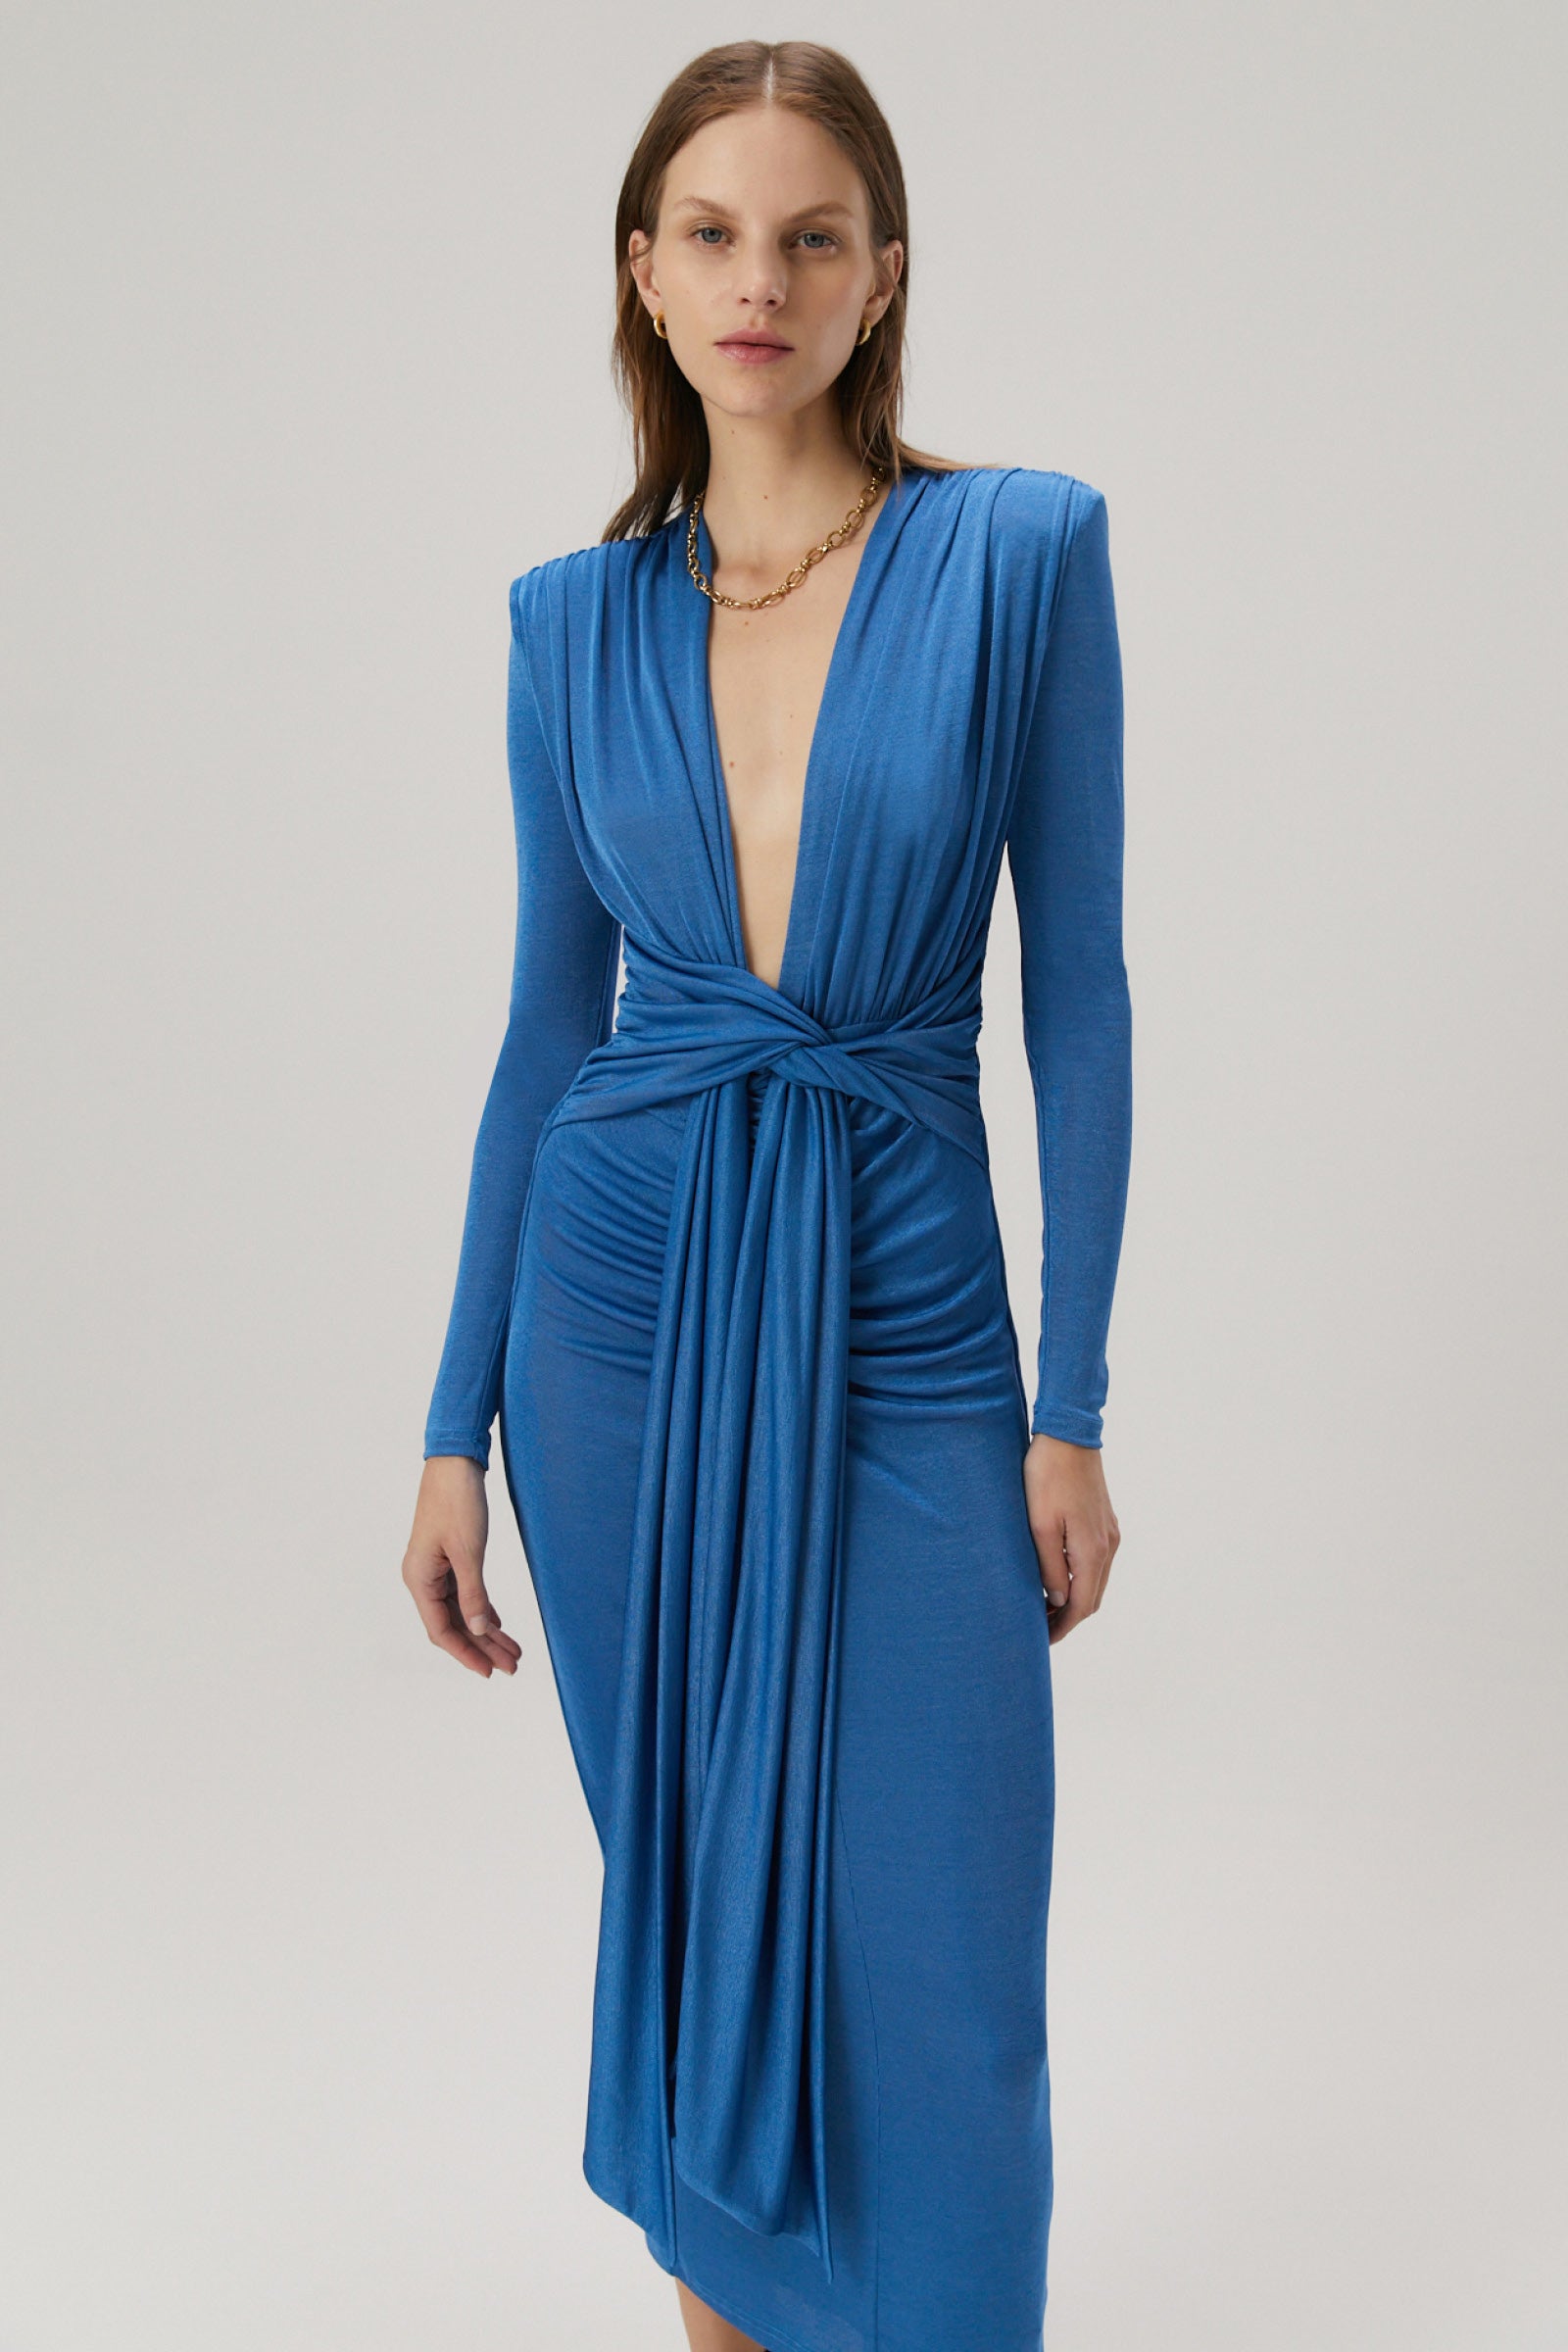 Women's Dresses online | Buy Designer Dresses Australia – MISHA